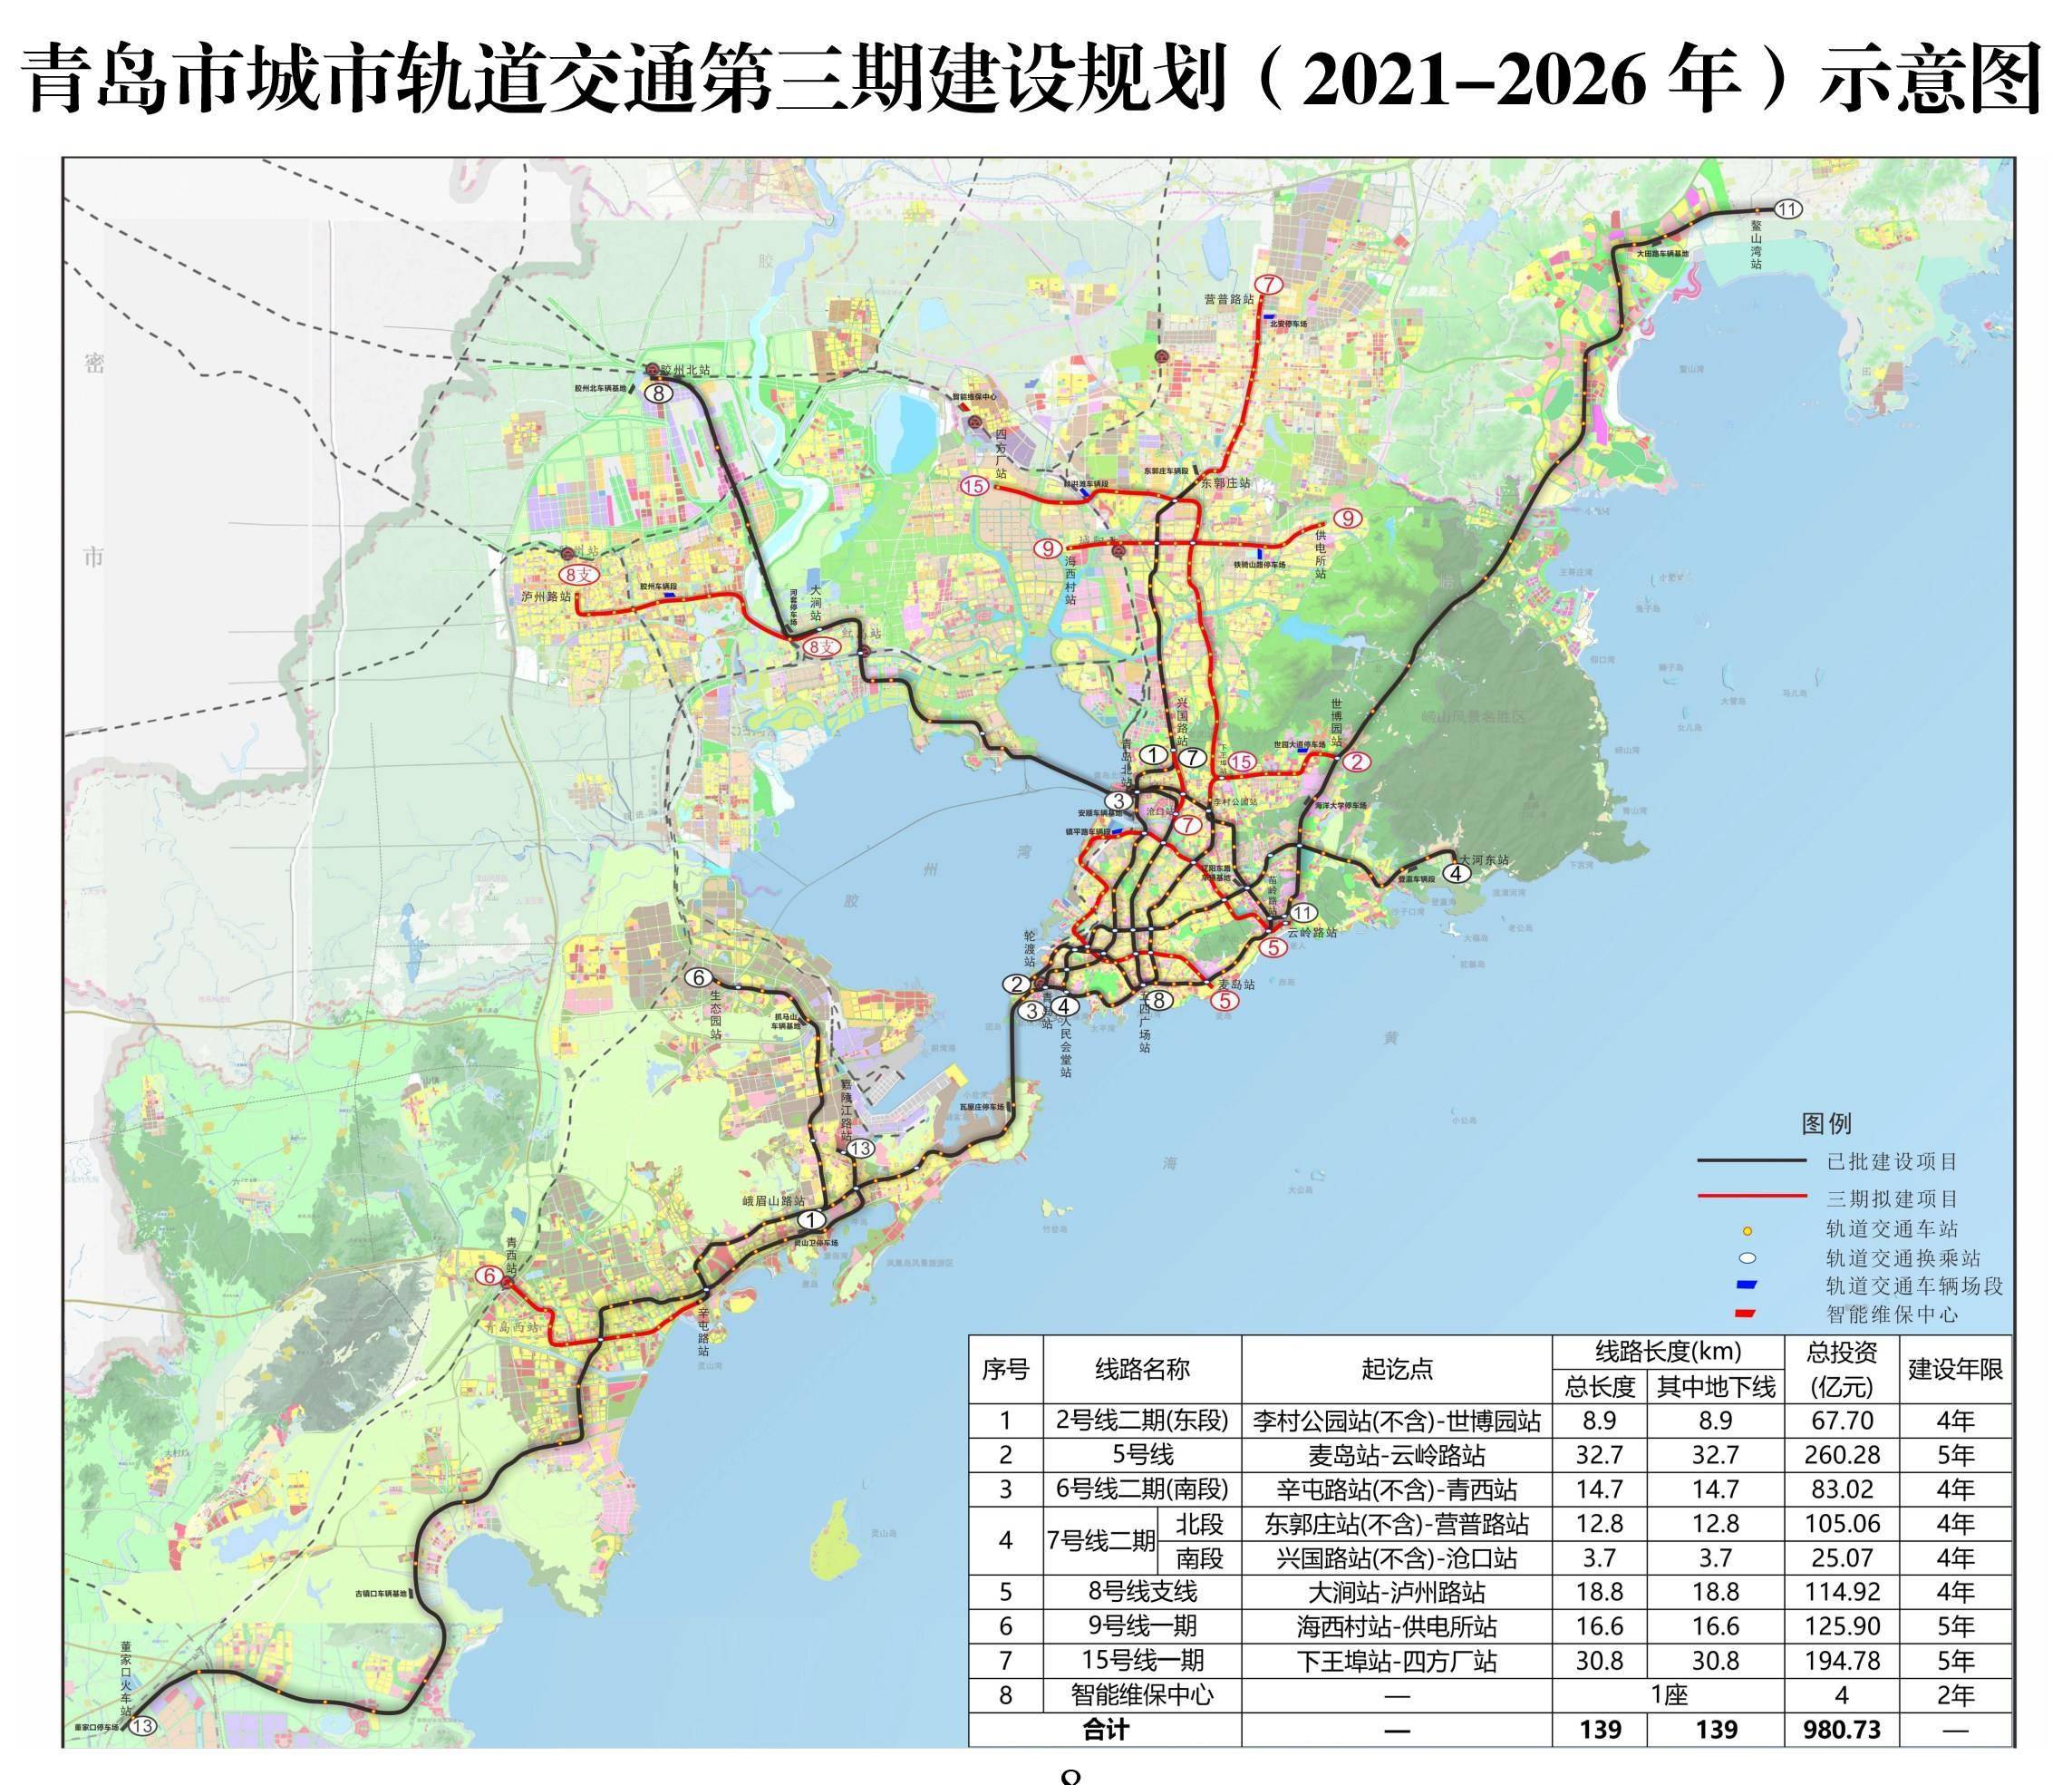 青岛轨道交通第三期规划获批 含地铁5号线等7个项目